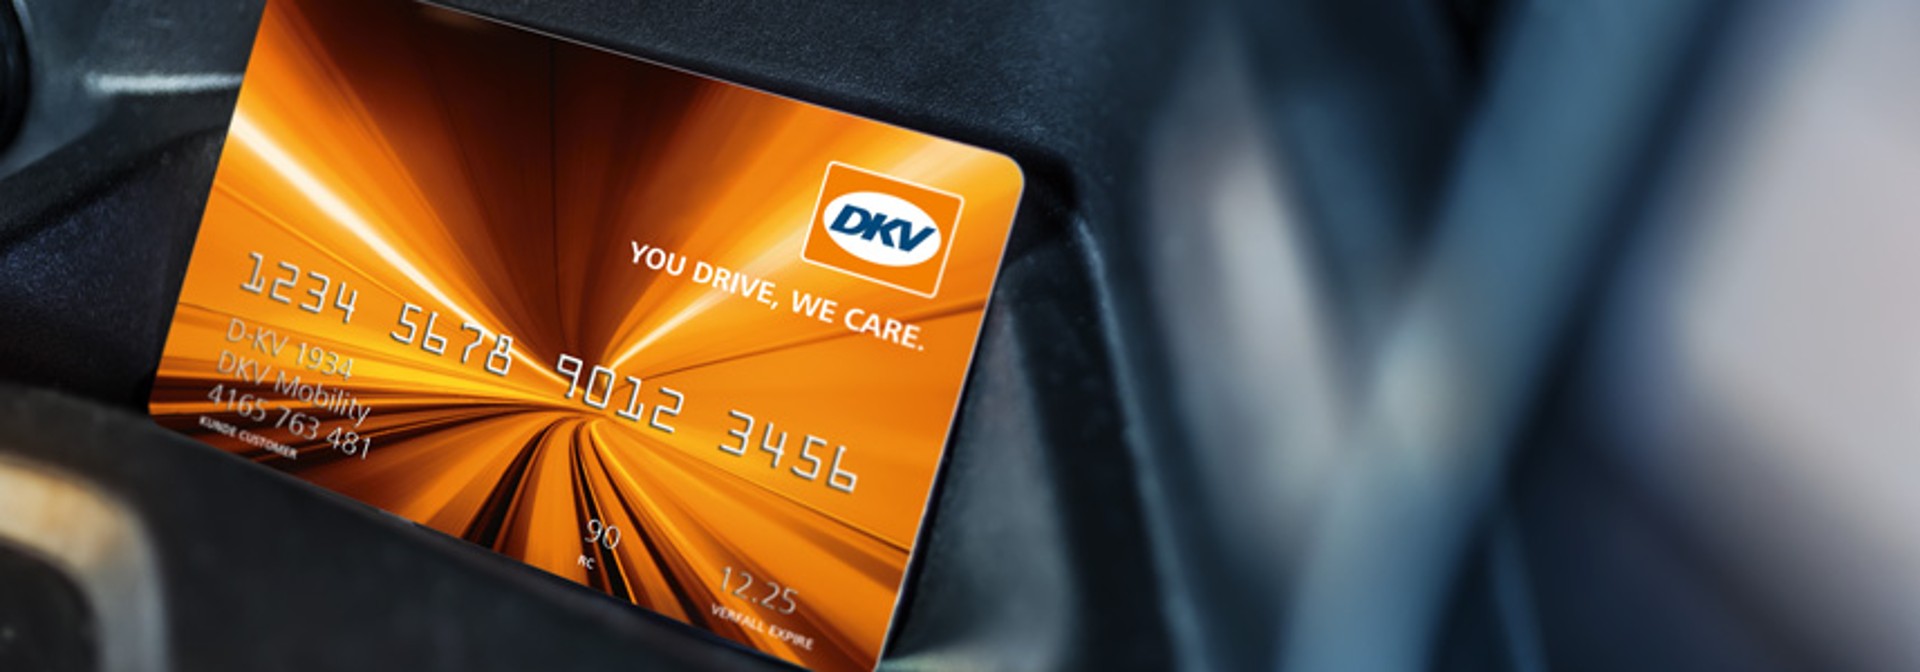 DKV card in car